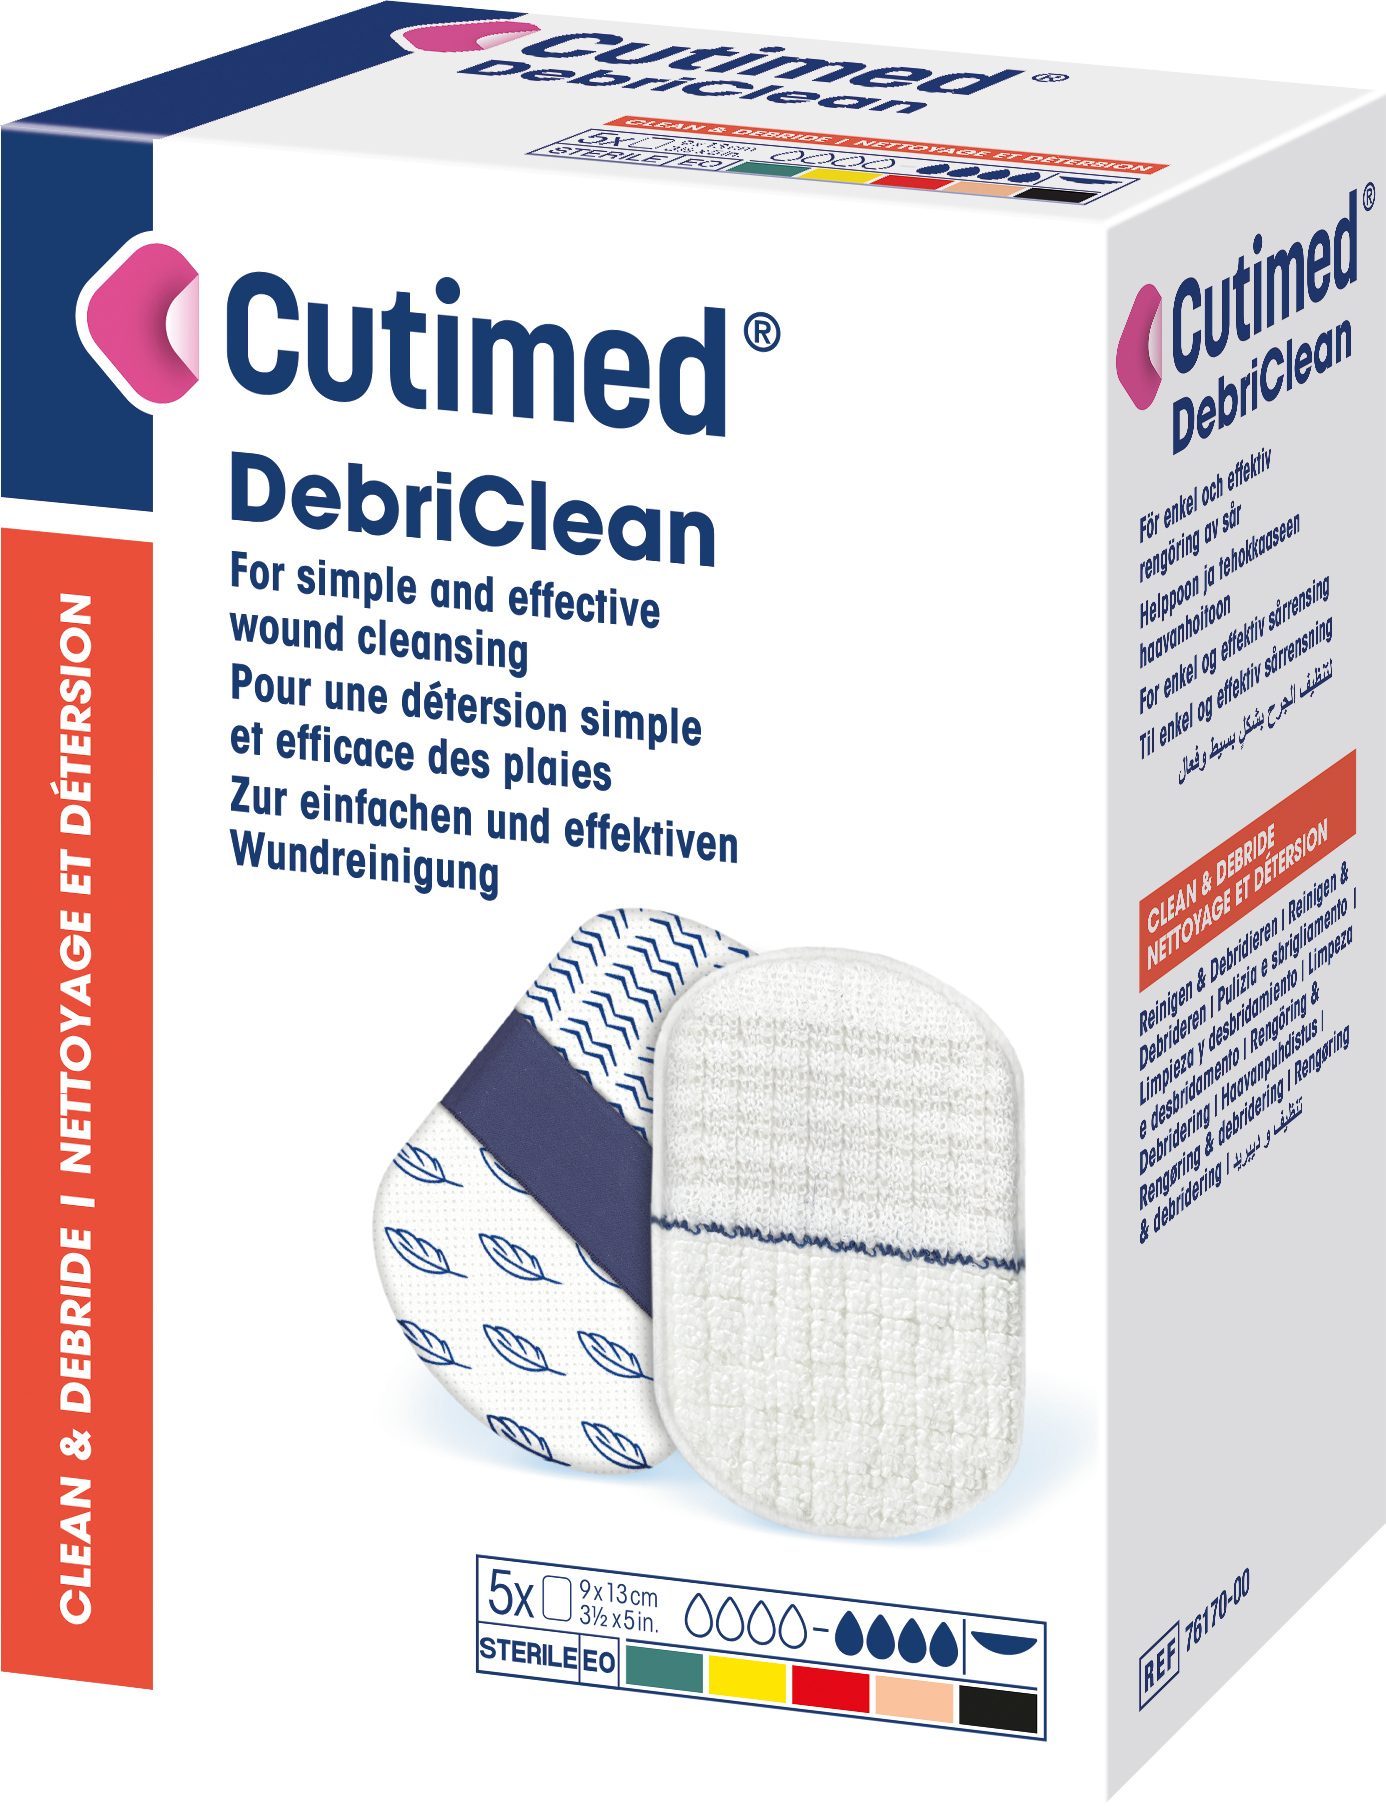 Bilde som viser et pakningsbilde av Cutimed® DebriClean